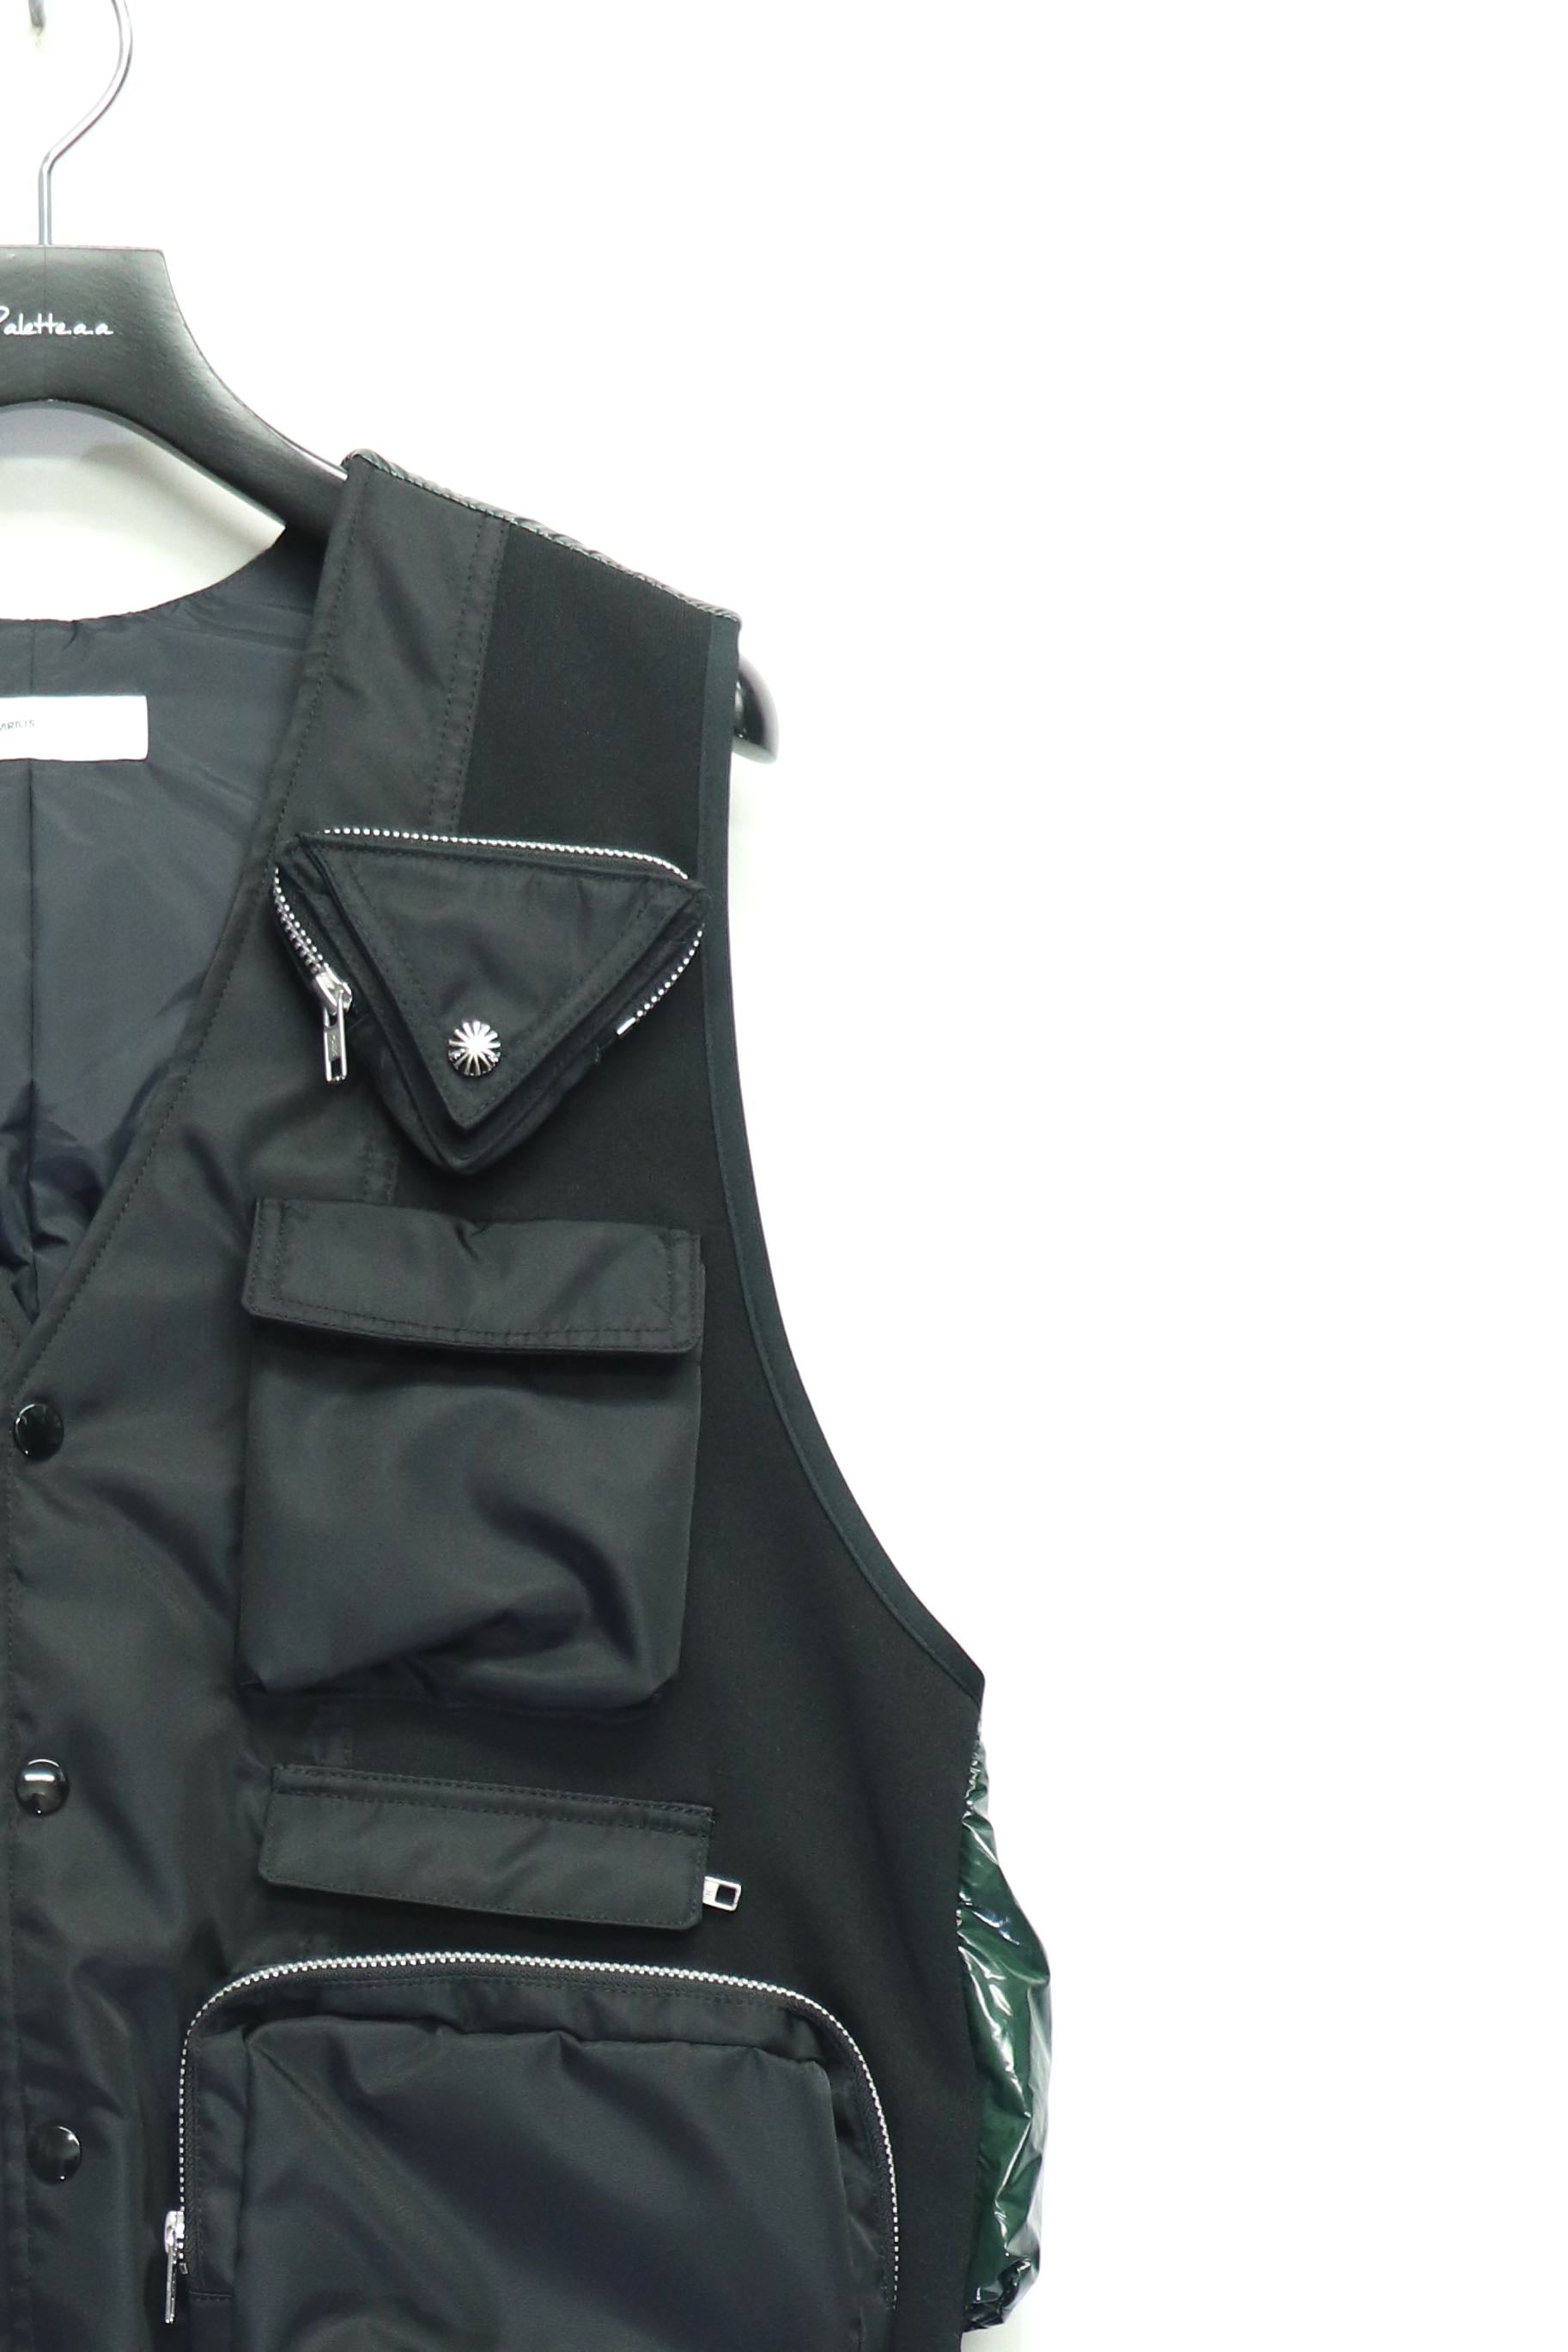 TOGA VIRILIS(トーガ ビリリース)のCoating taffeta vestの通販 